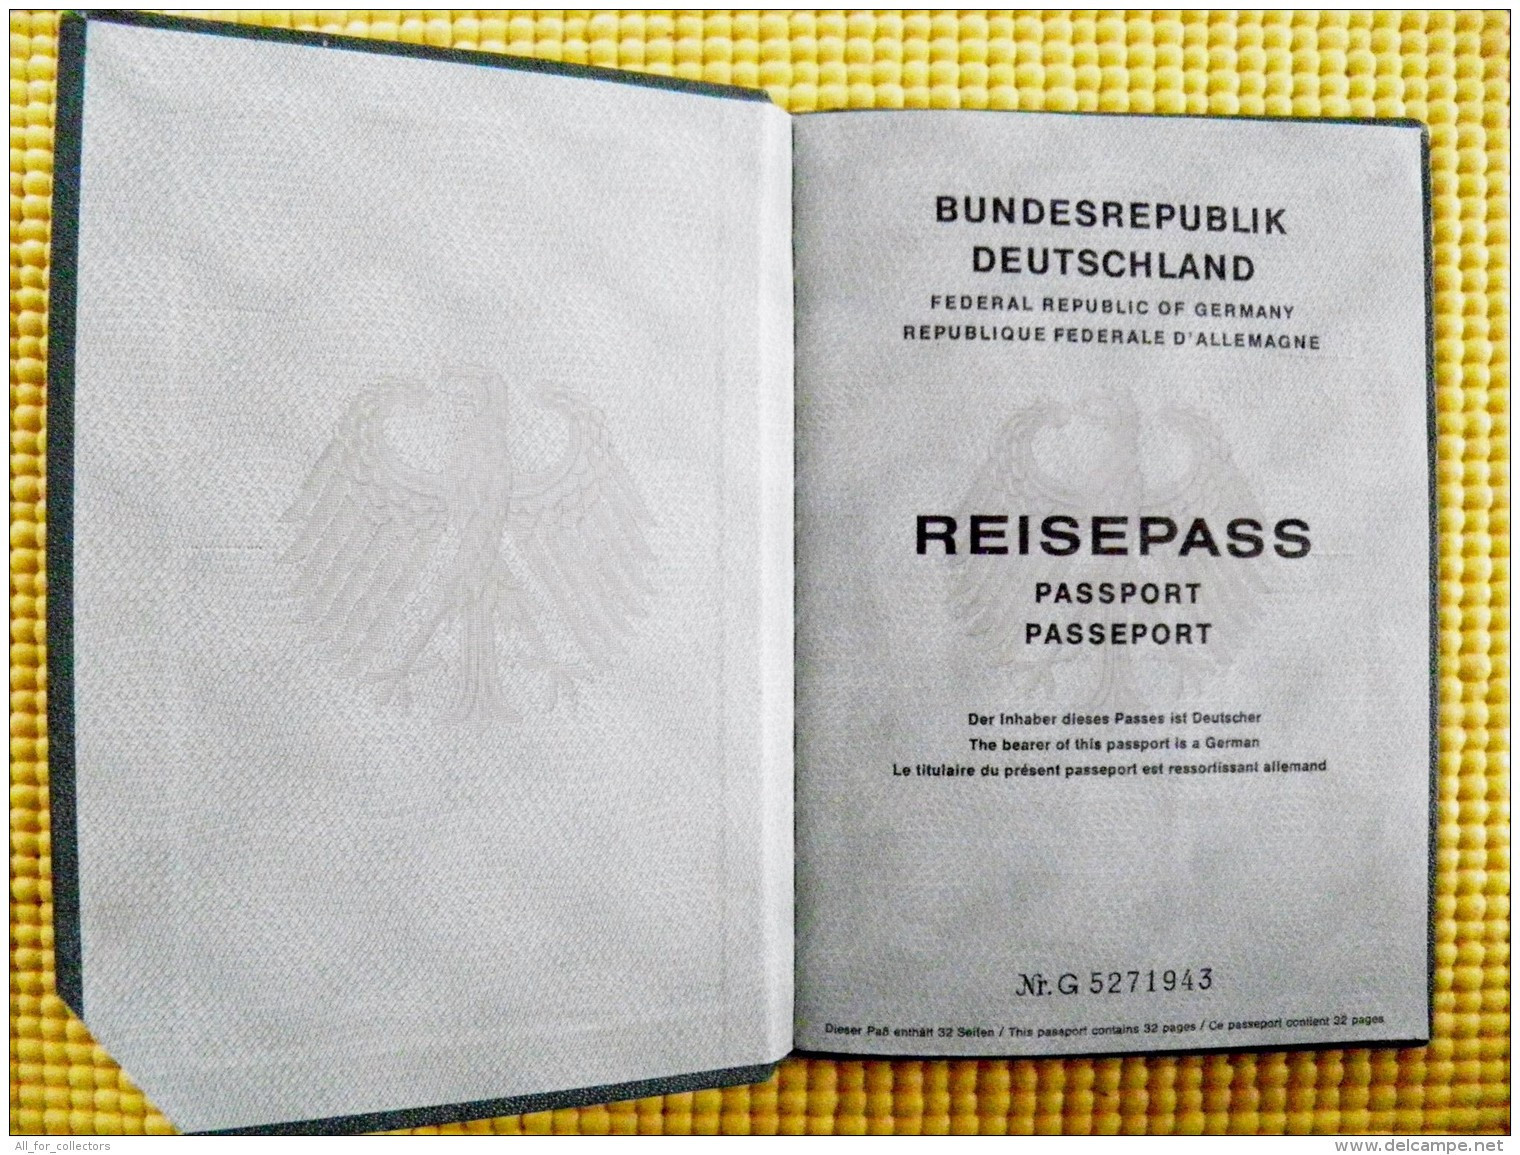 Reisepass Passport Germany Deutschland 1984 Bremen - Documenti Storici